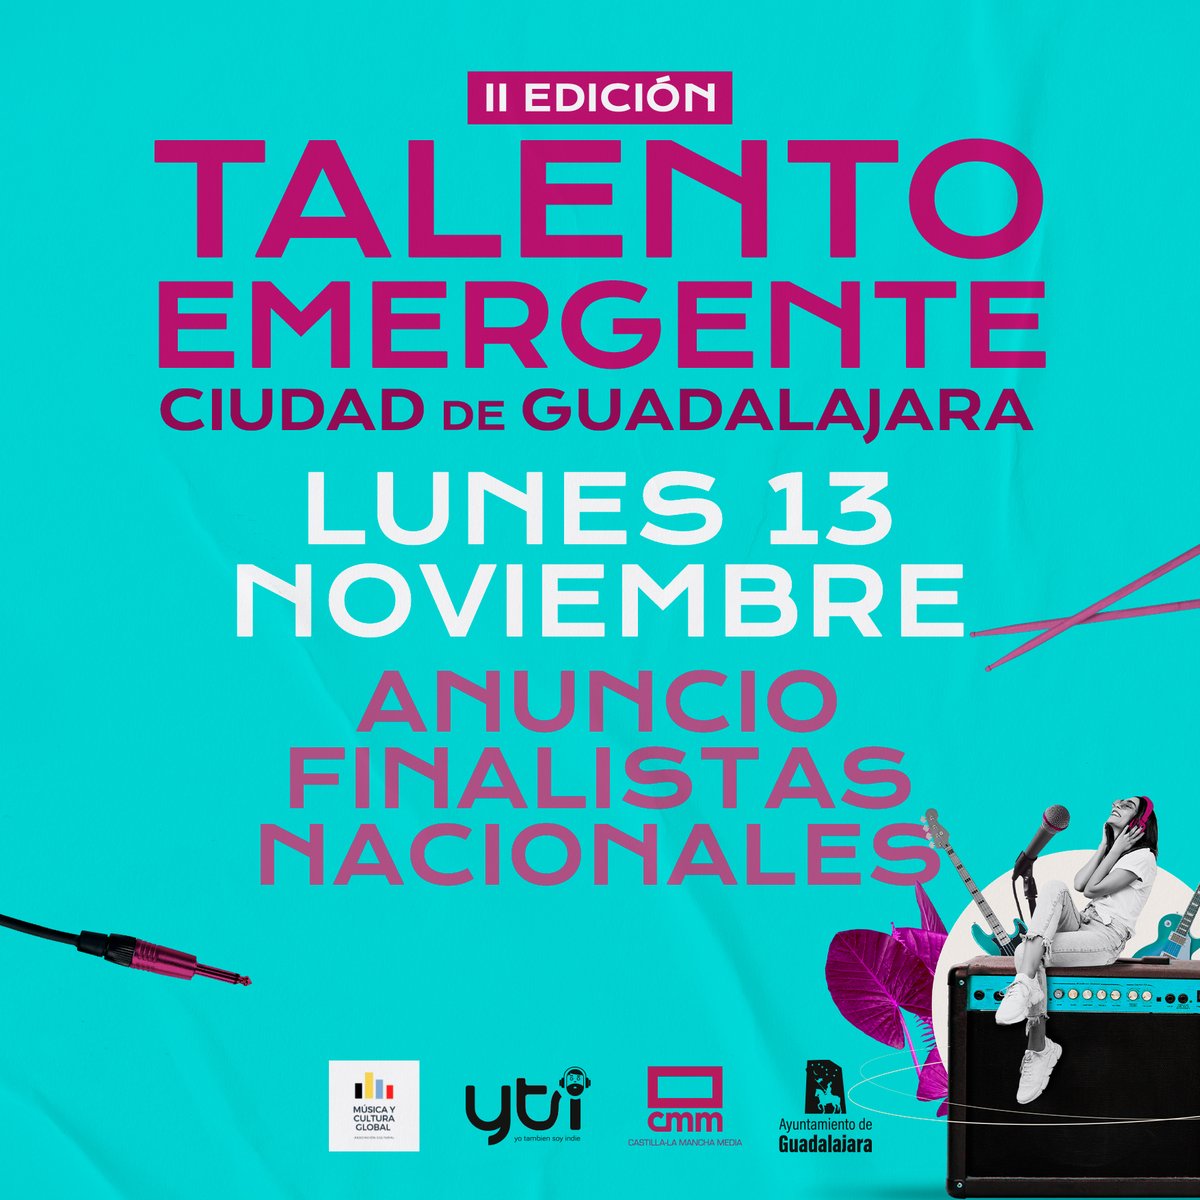 🔥👉El lunes a las 11.00 horas anunciamos a los 4 finalistas de la segunda edición del concurso 'Talento Emergente Ciudad de Guadalajara'. 👉¡Mucha suerte! #TalentoEmergenteGuadalajara #concursodebandas #TalentoEmergenteGu @GuadalajaraAyto @CMM_es @RadioCLM_es @juansoloradio